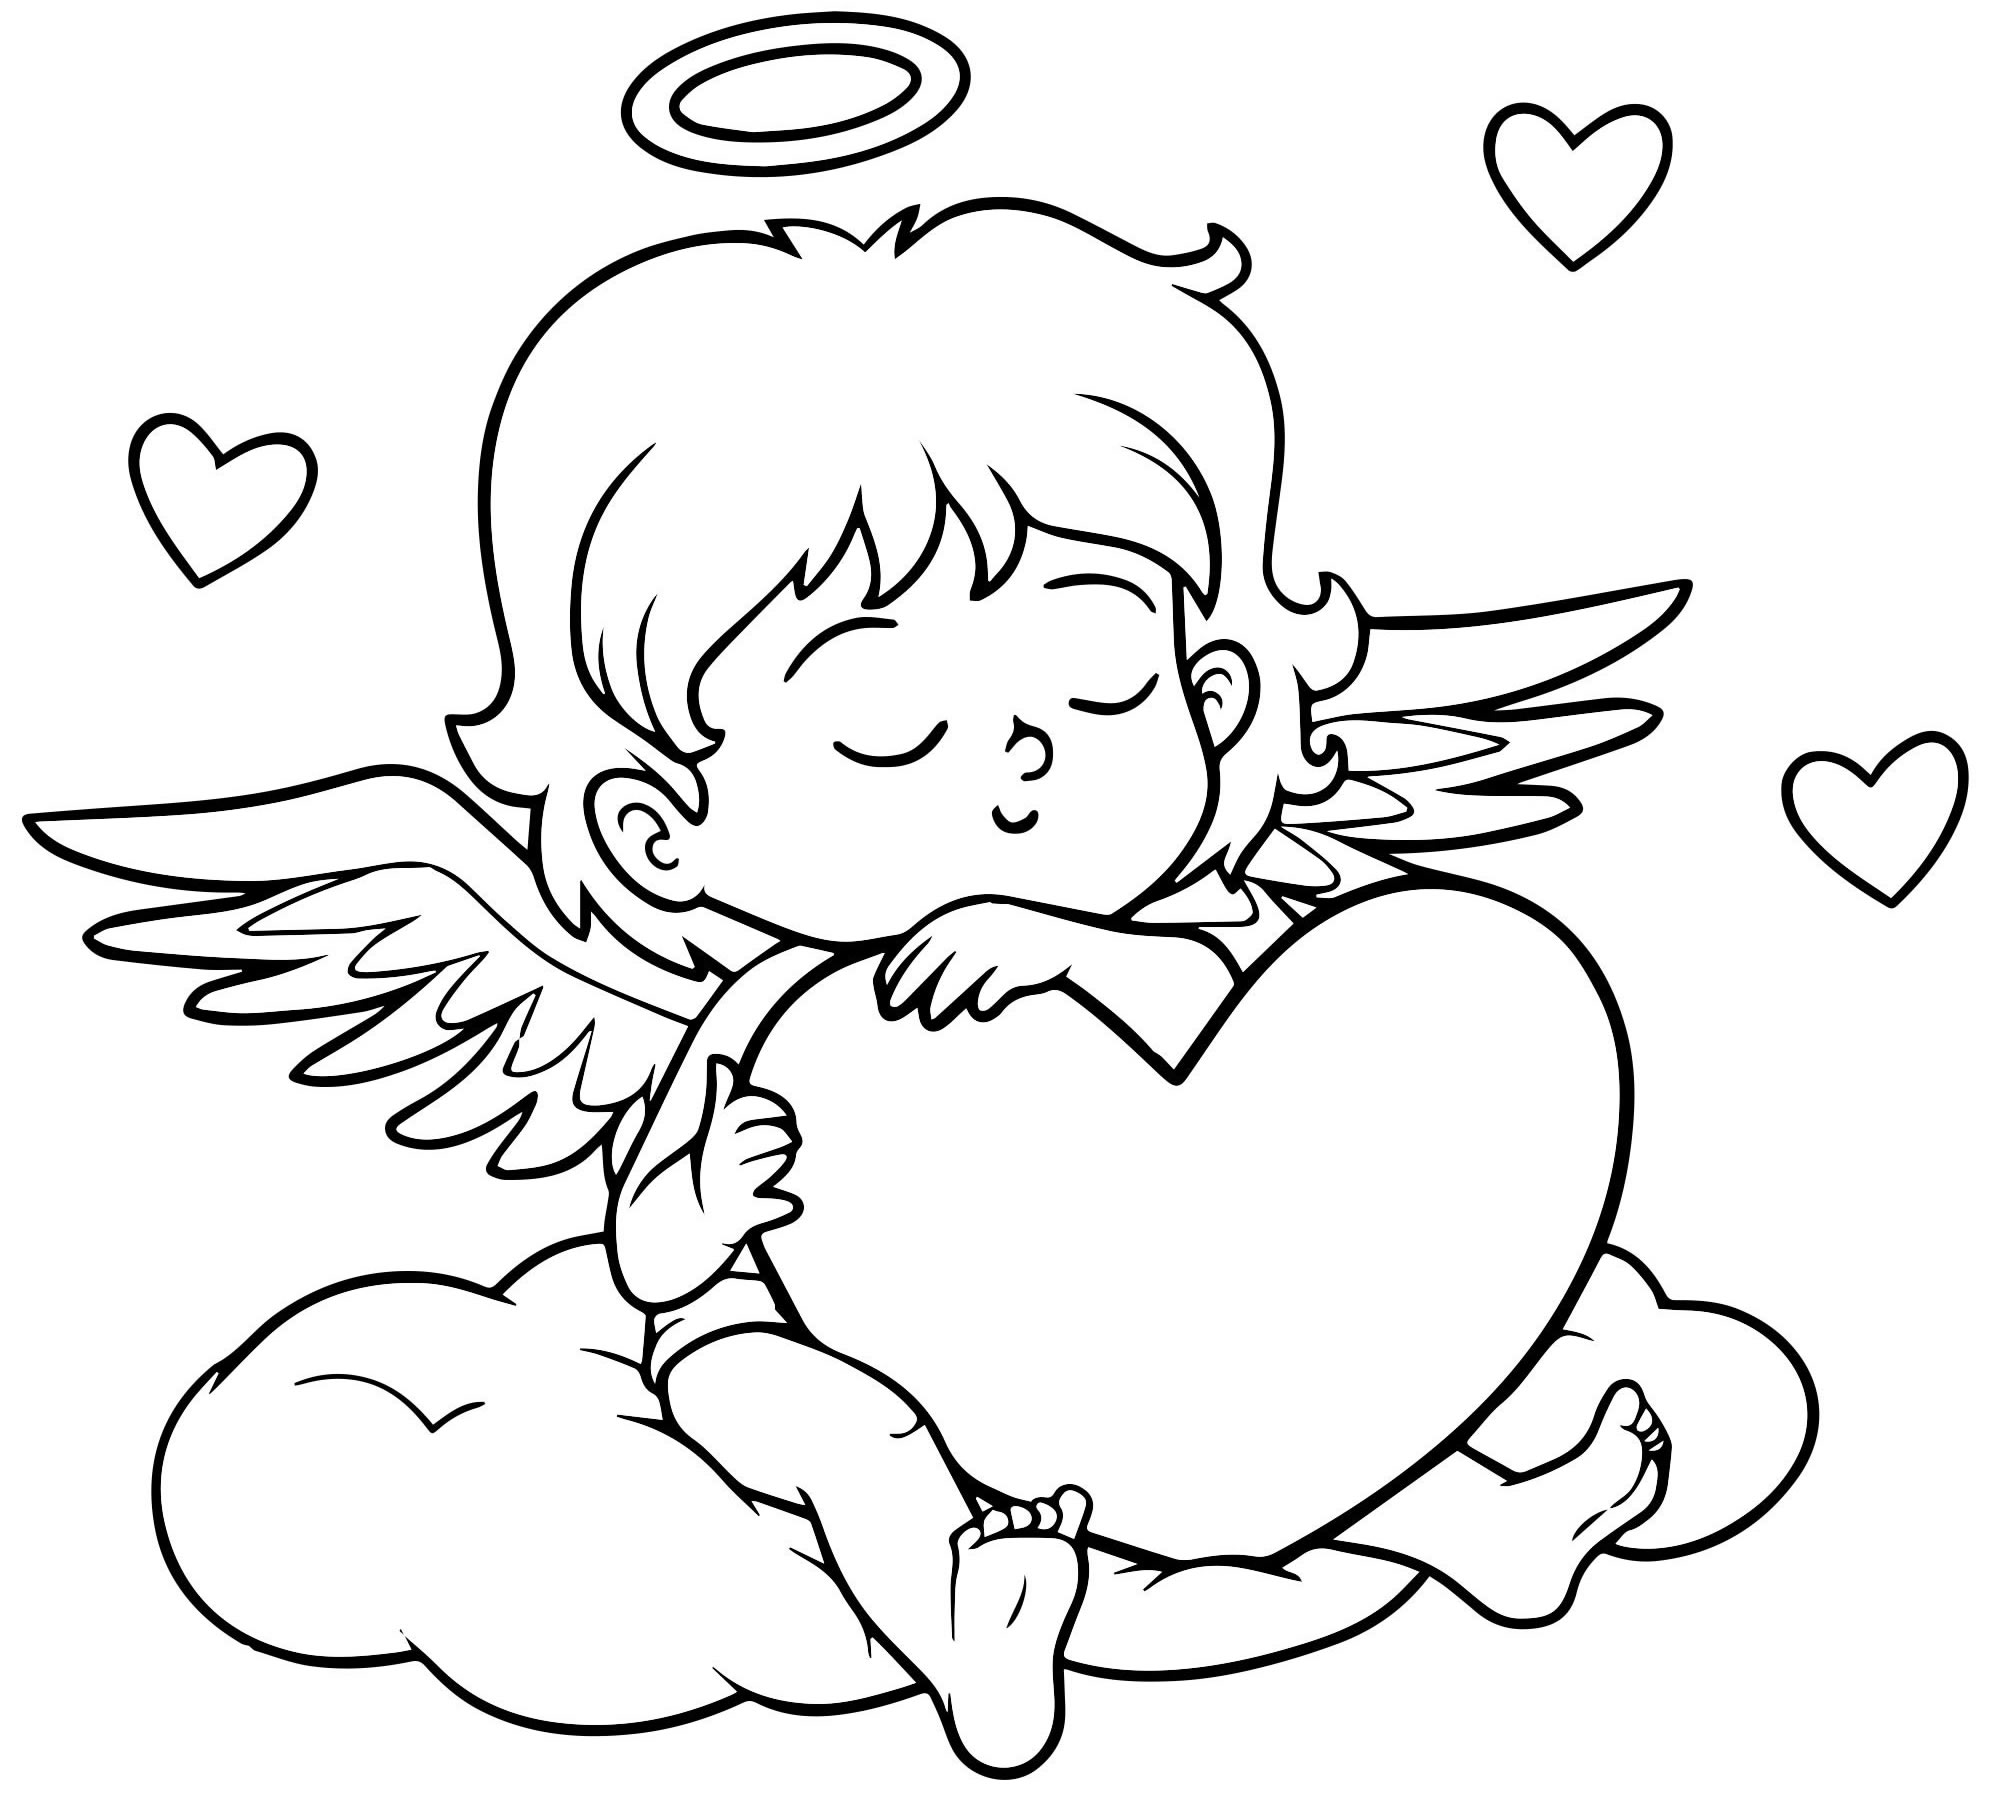 Валентинка с ангелом раскраска для детей